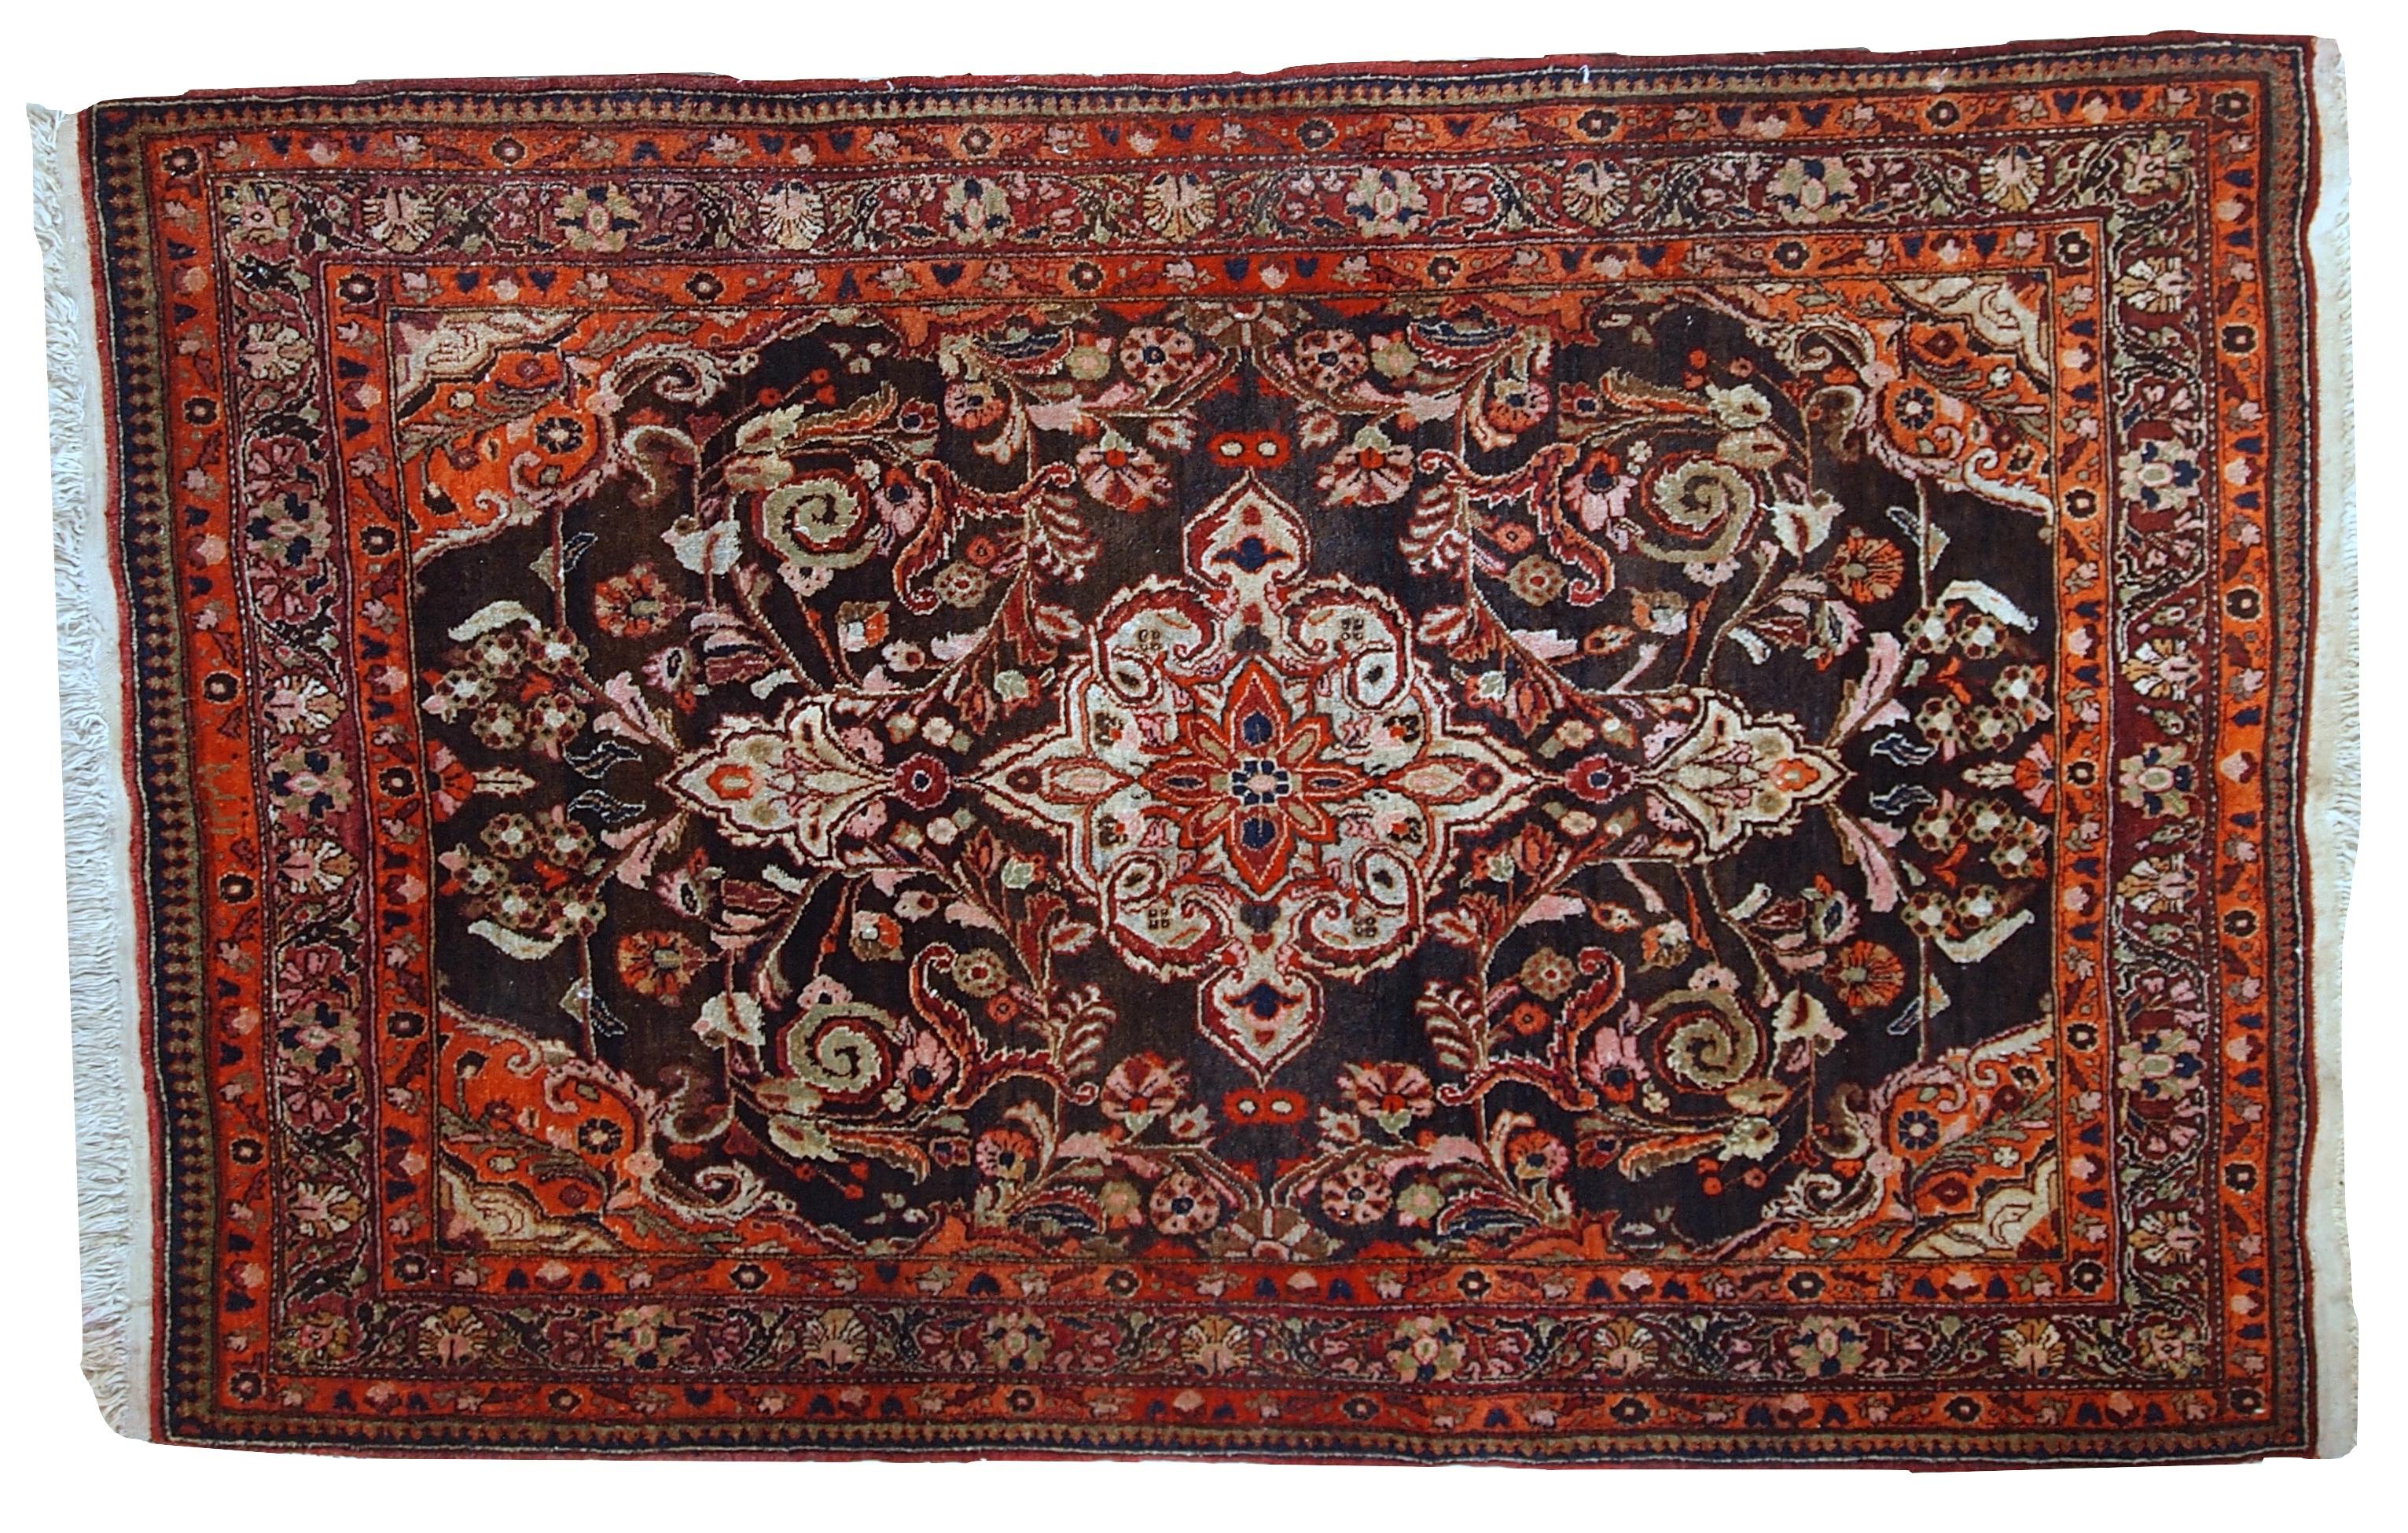 Vintage Tabriz Stil Teppich in original gutem Zustand. Er ist aus schokoladenbrauner und orangefarbener Wolle mit einigen Oliv- und Rosatönen.